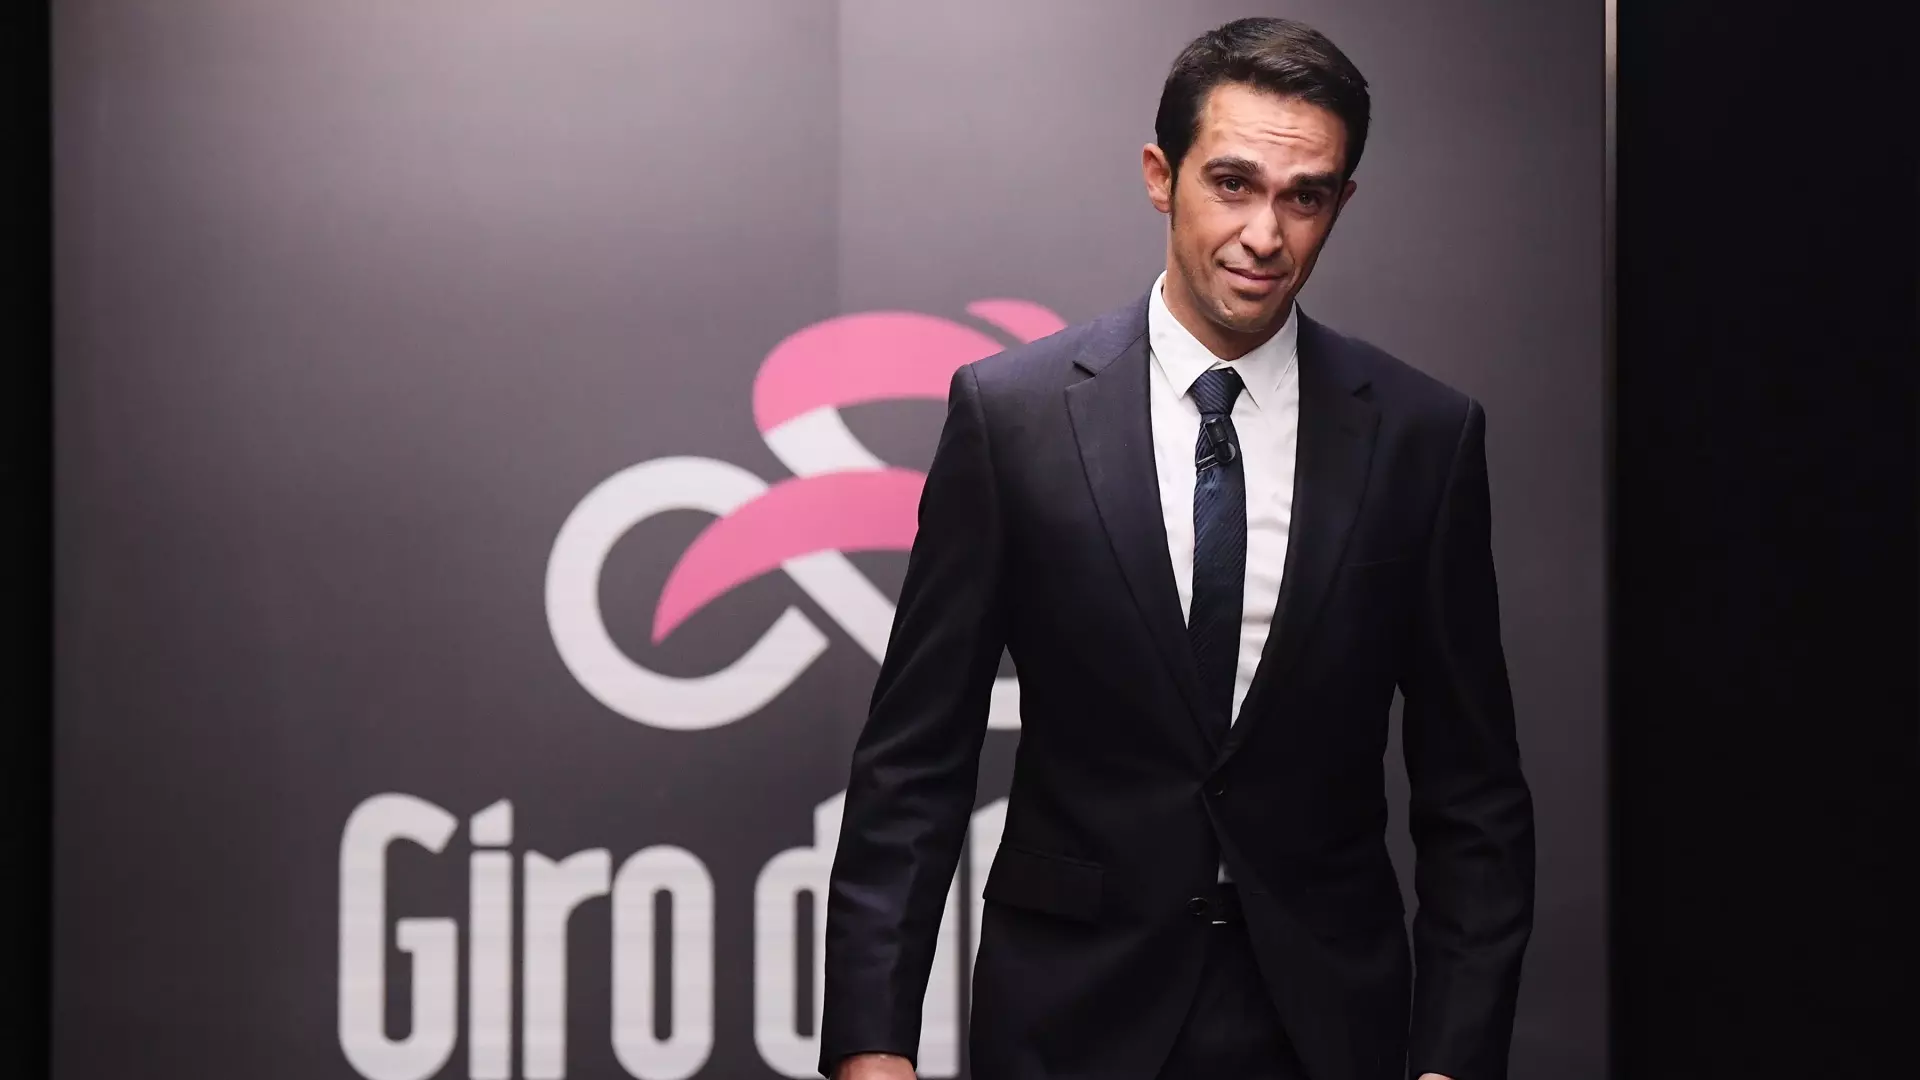 Giro d’Italia 2023, Alberto Contador sa cosa accadrà